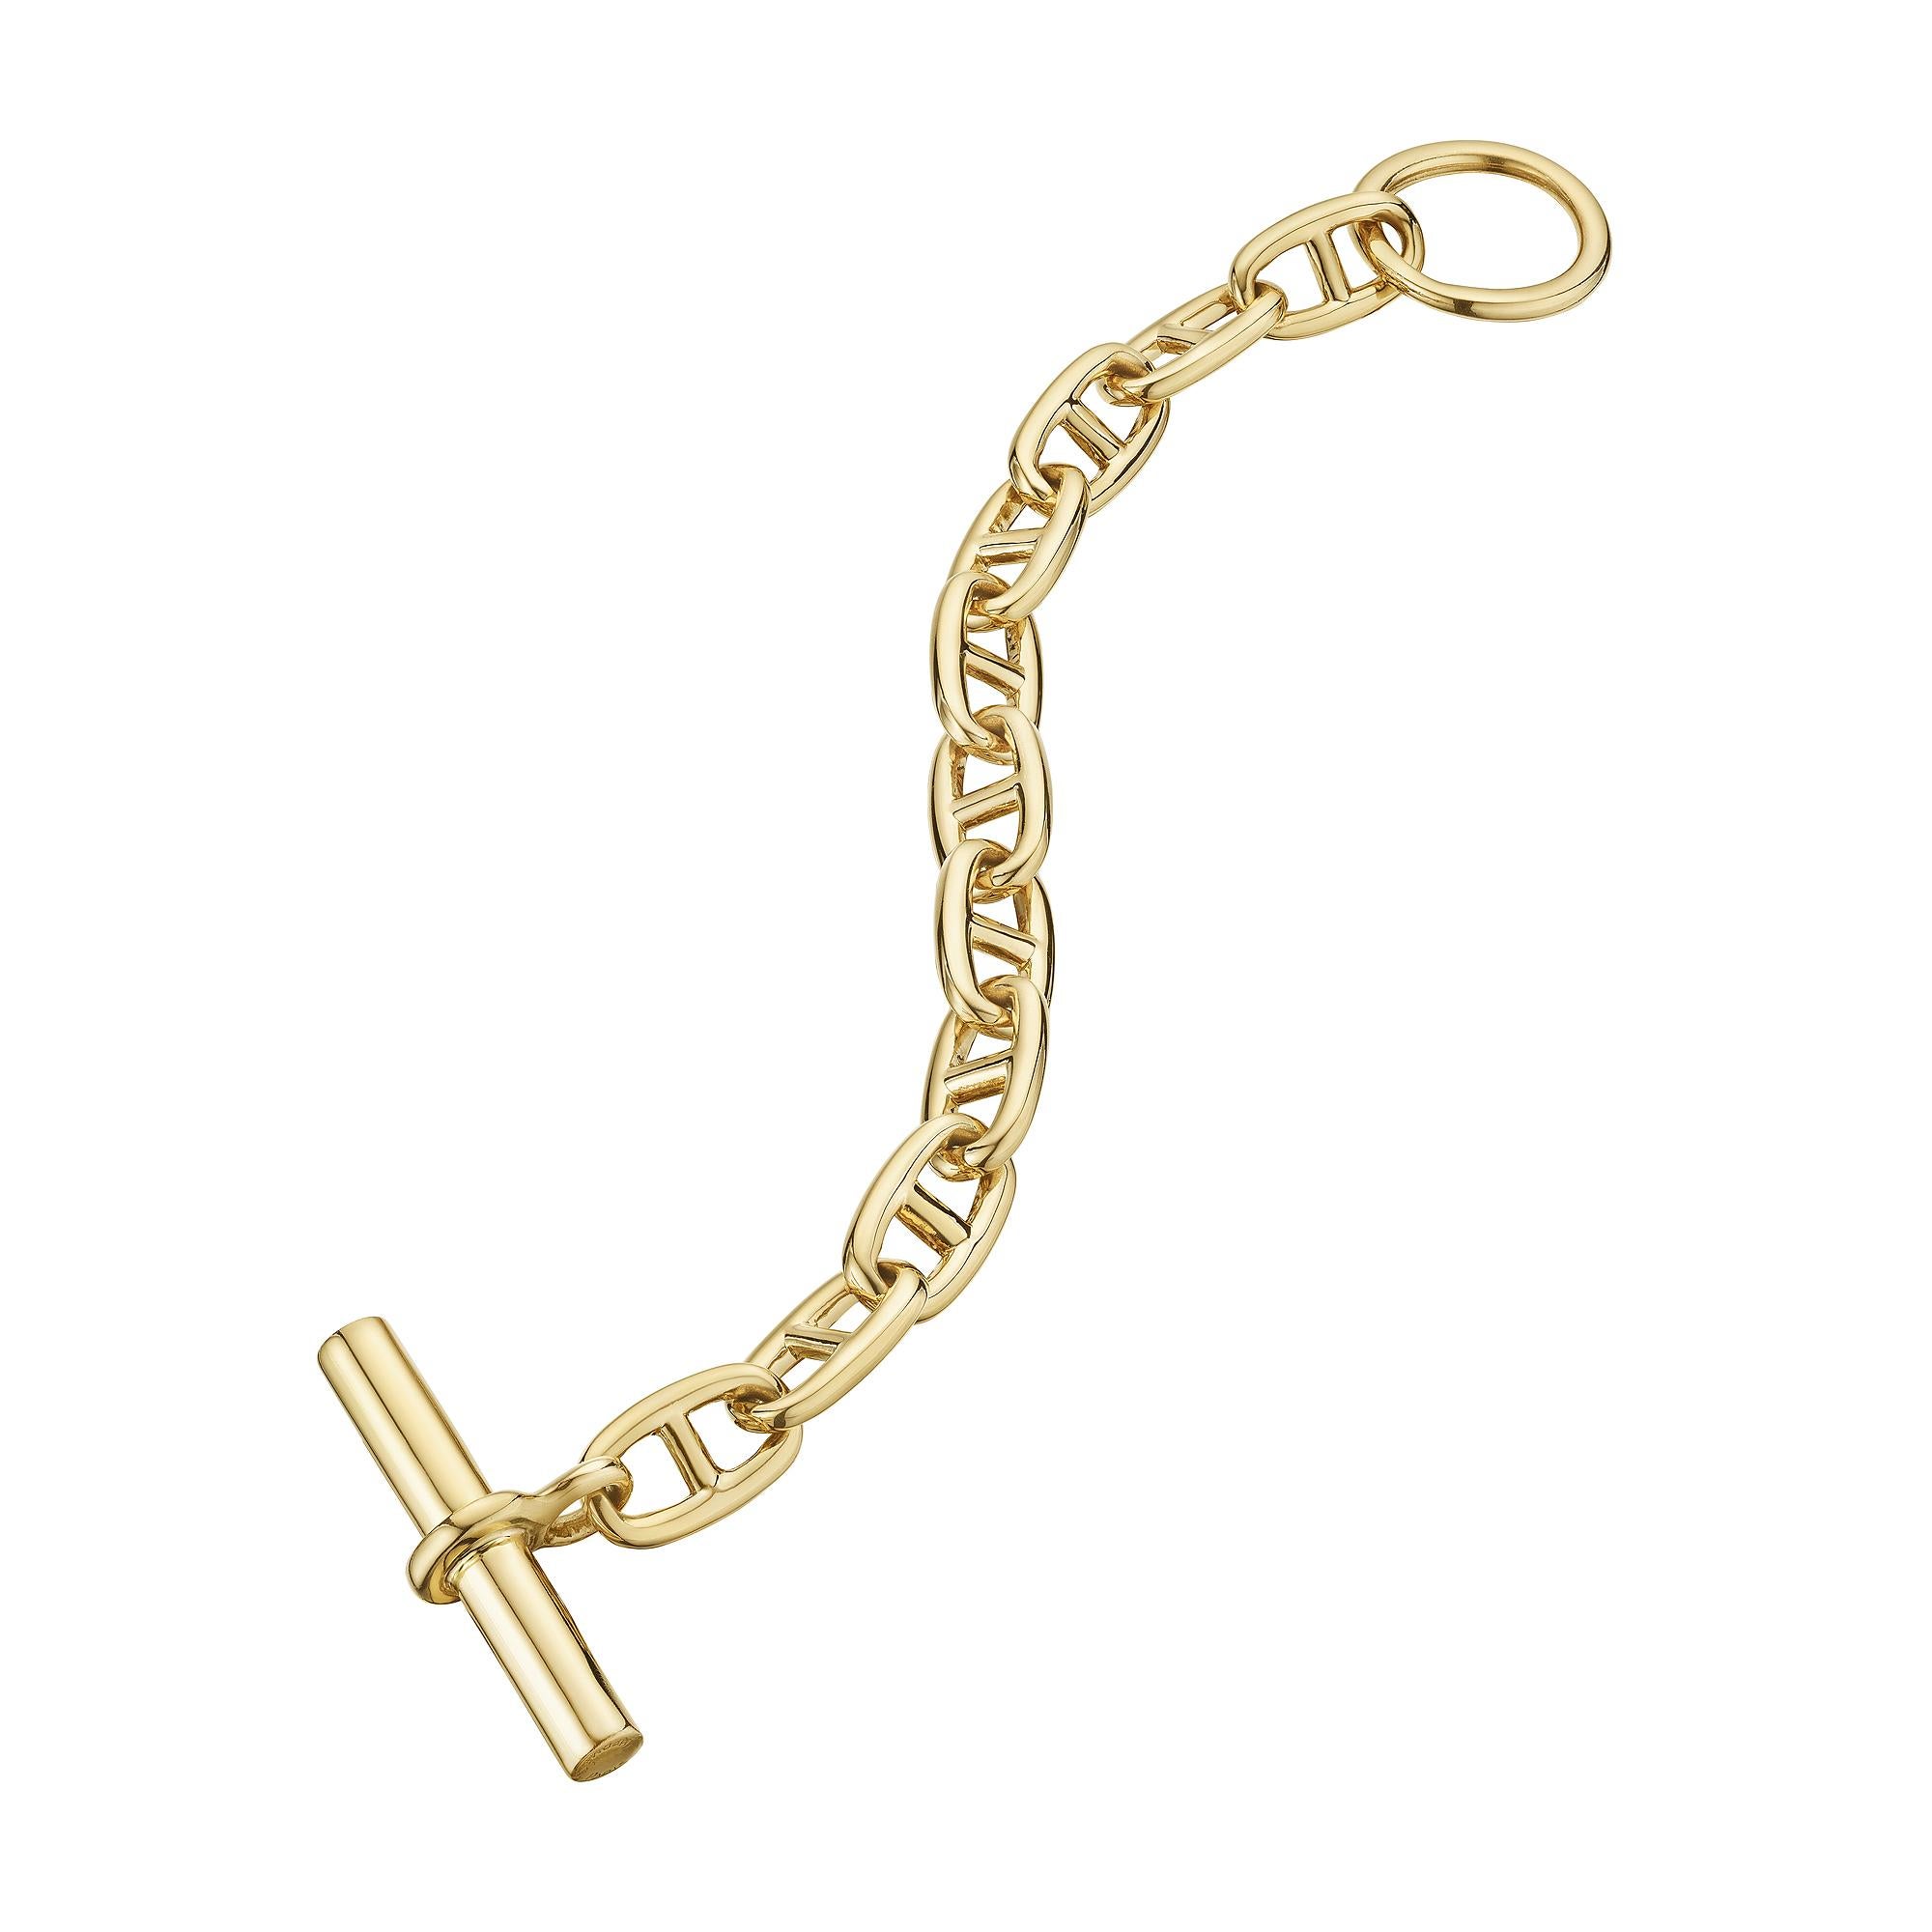 Kühn und kompromisslos ist dieses modernistische 'chaine d'ancre' Armband von Hermes Paris mit mittlerem Gliederarmband das Statement, nach dem Sie schon lange gesucht haben.  Mit seinen 11 Gliedern ist dieses polierte Armband aus 18 Karat Gelbgold